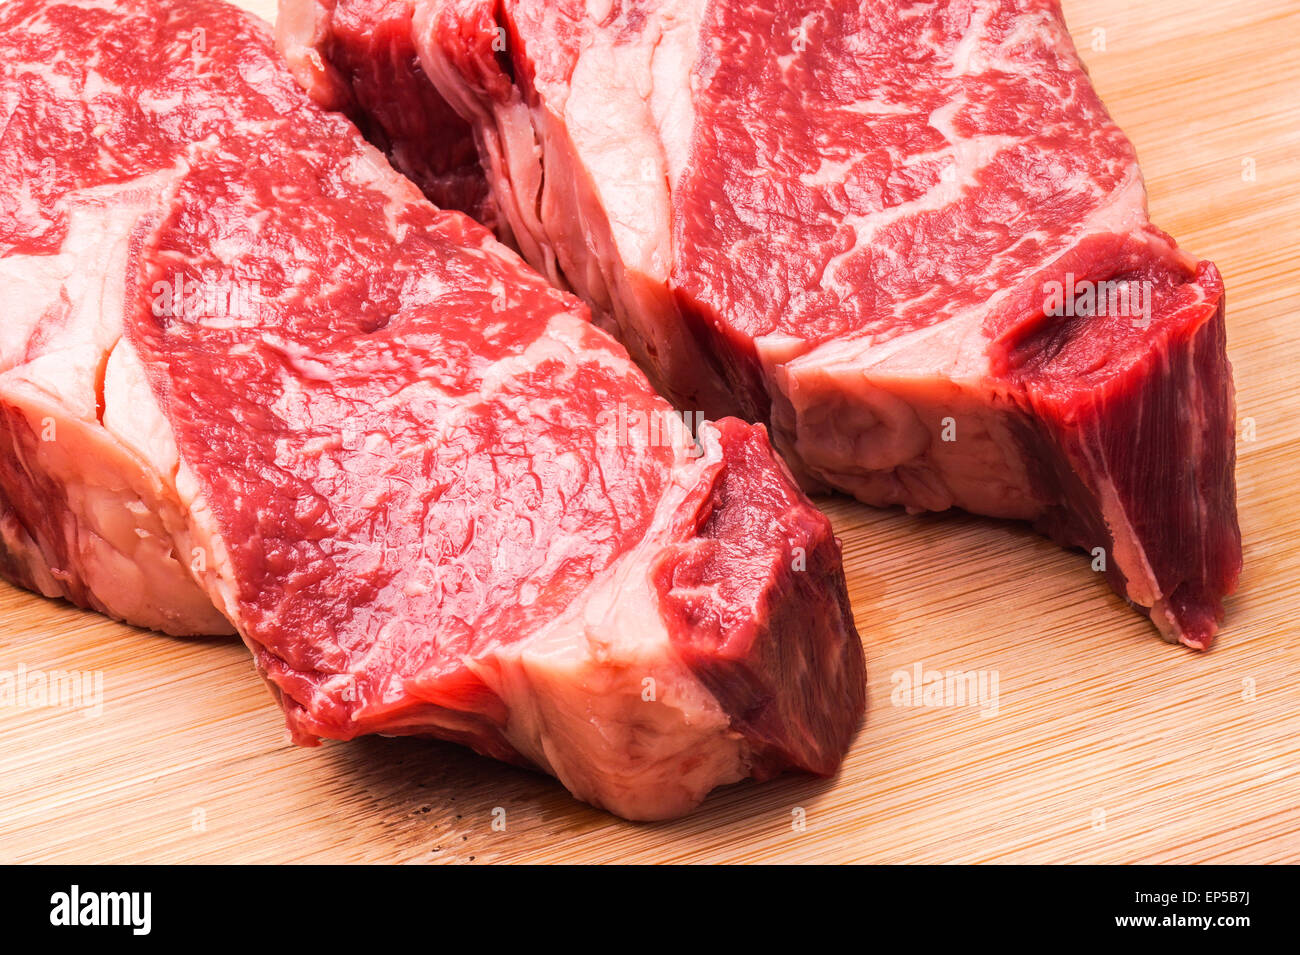 La viande de boeuf cru, organique, rouge steak Kobe gras pour la cuisson Banque D'Images